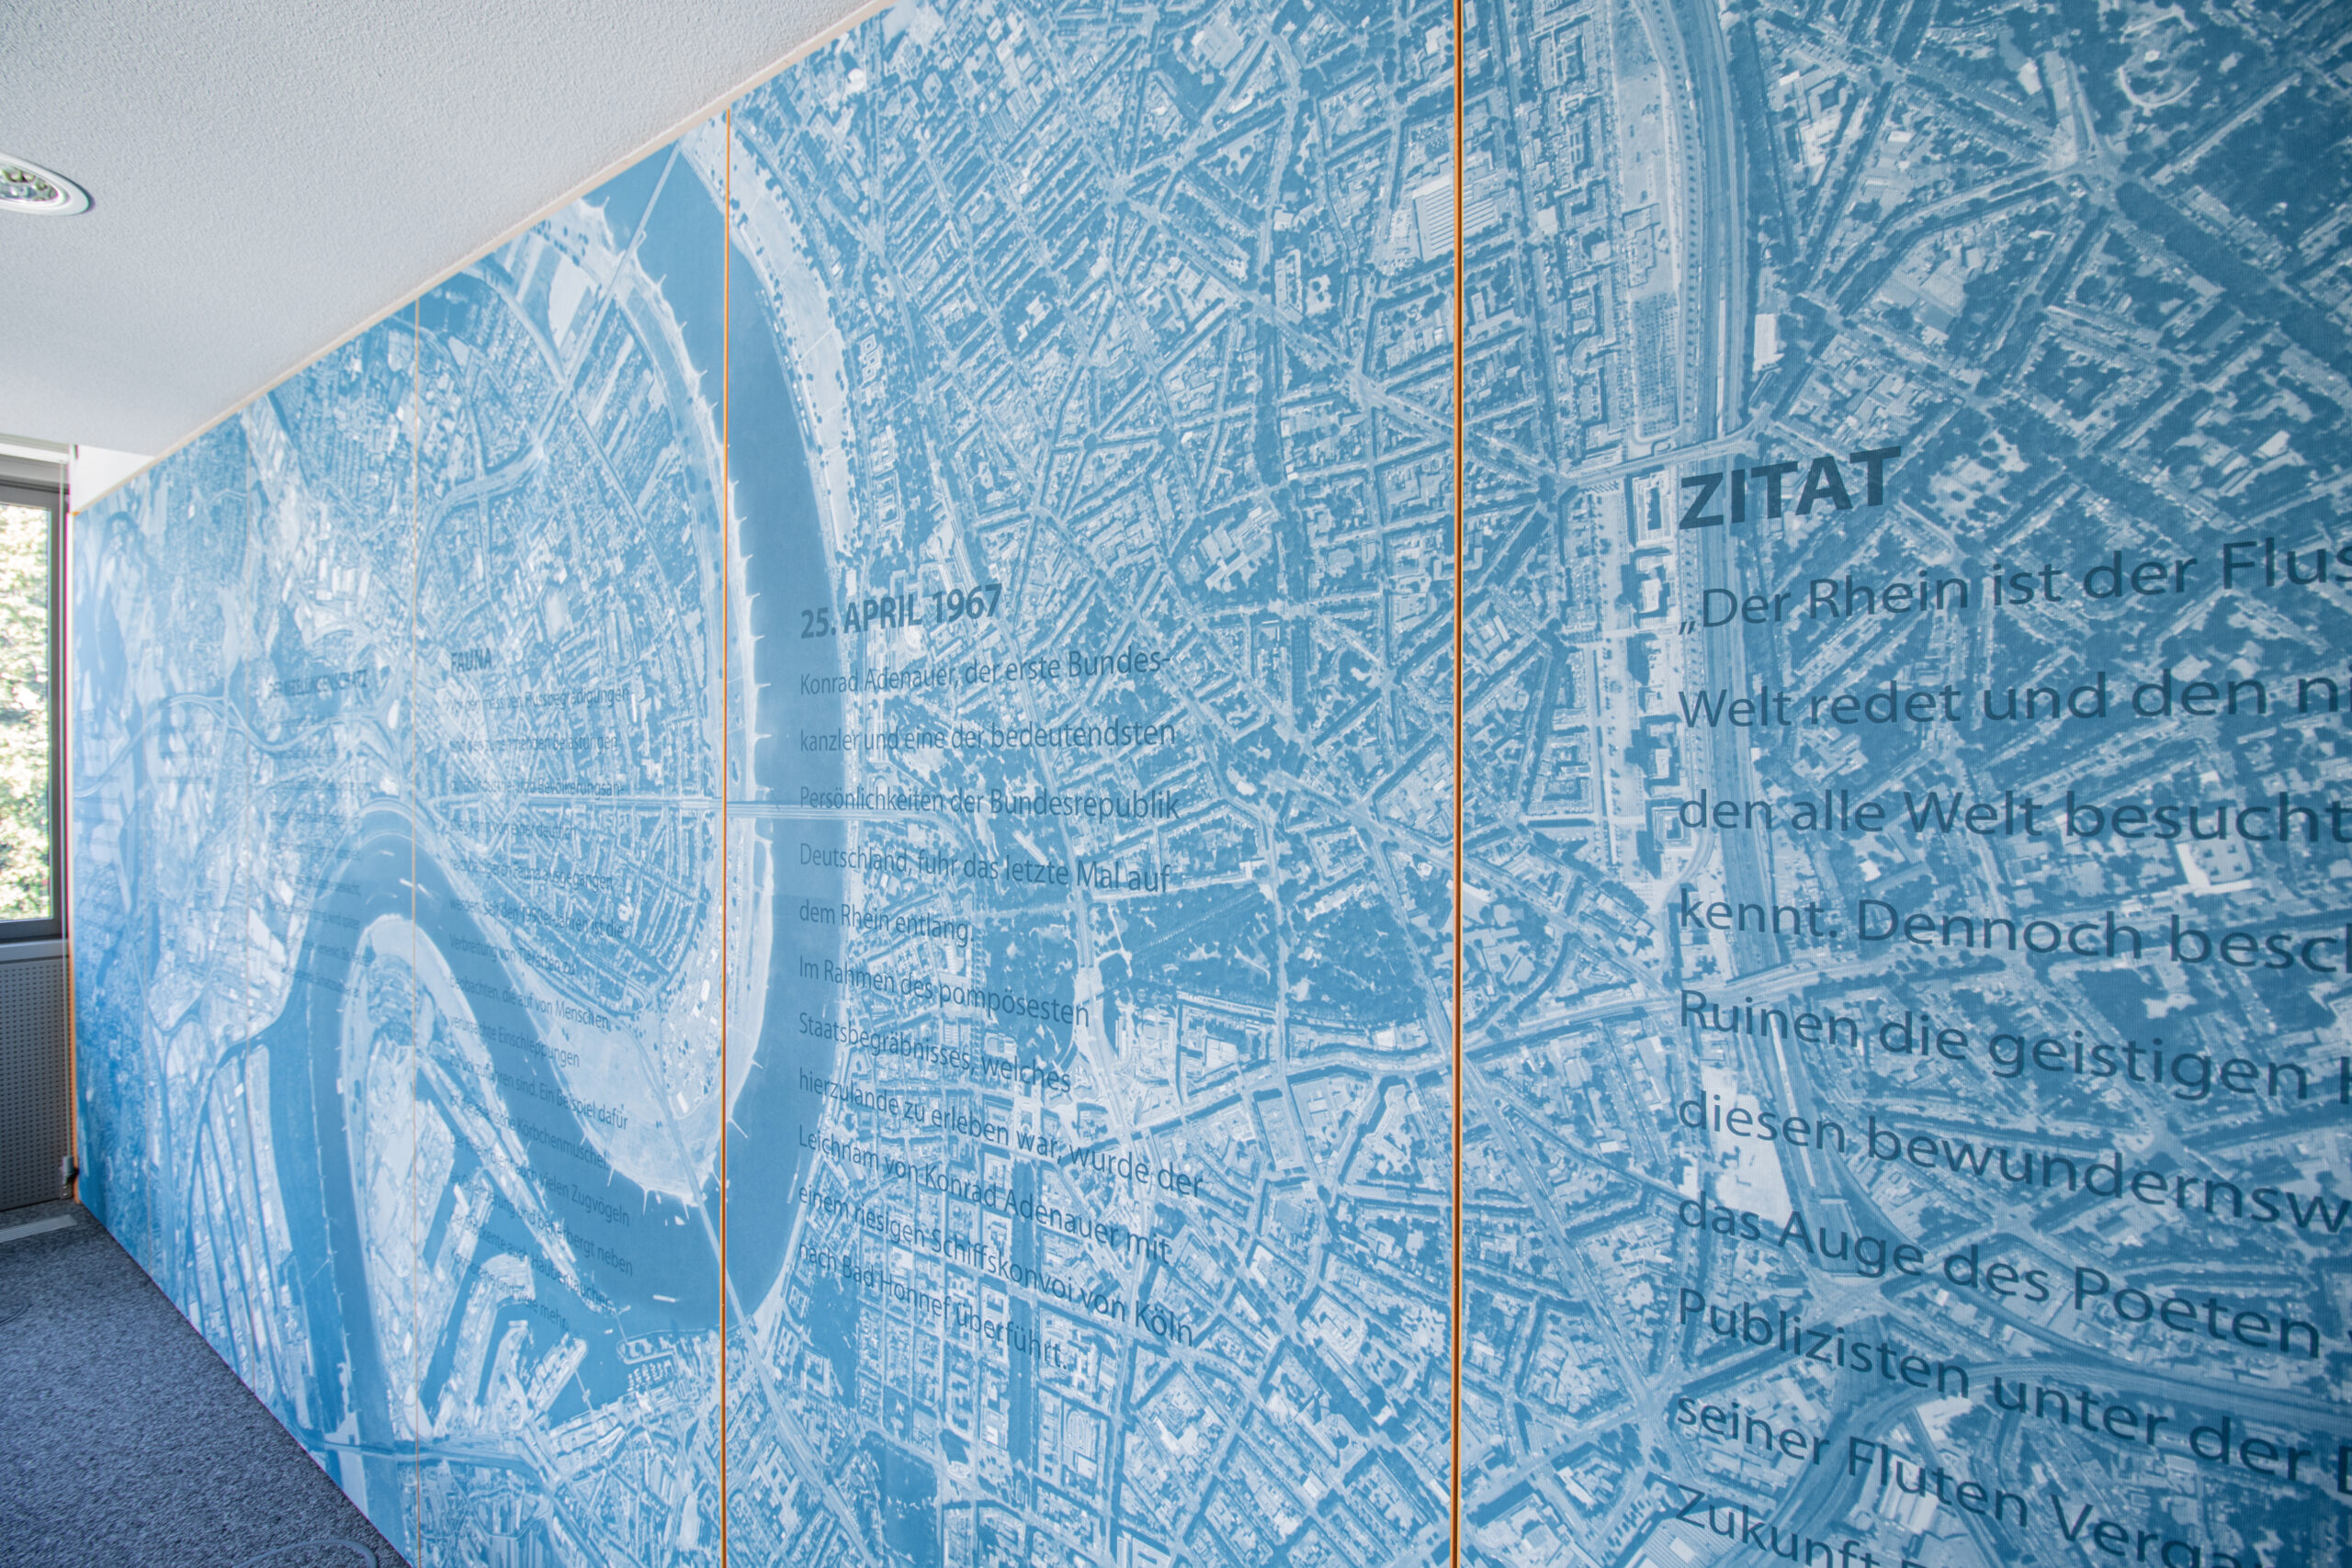 Eine Luftaufnahme der Stadt Köln mit Flusslauf des Rheins, ist in einem Blauton eingefärbt und als Motivtapete verarbeitet. Auf den einzelnen Tapetenbahnen sind verschiedene Schriftblöcke, z.B mit Informationen über den Niebelungenschatz, die Fauna und ein Zitat über den Rhein, aufgeführt.